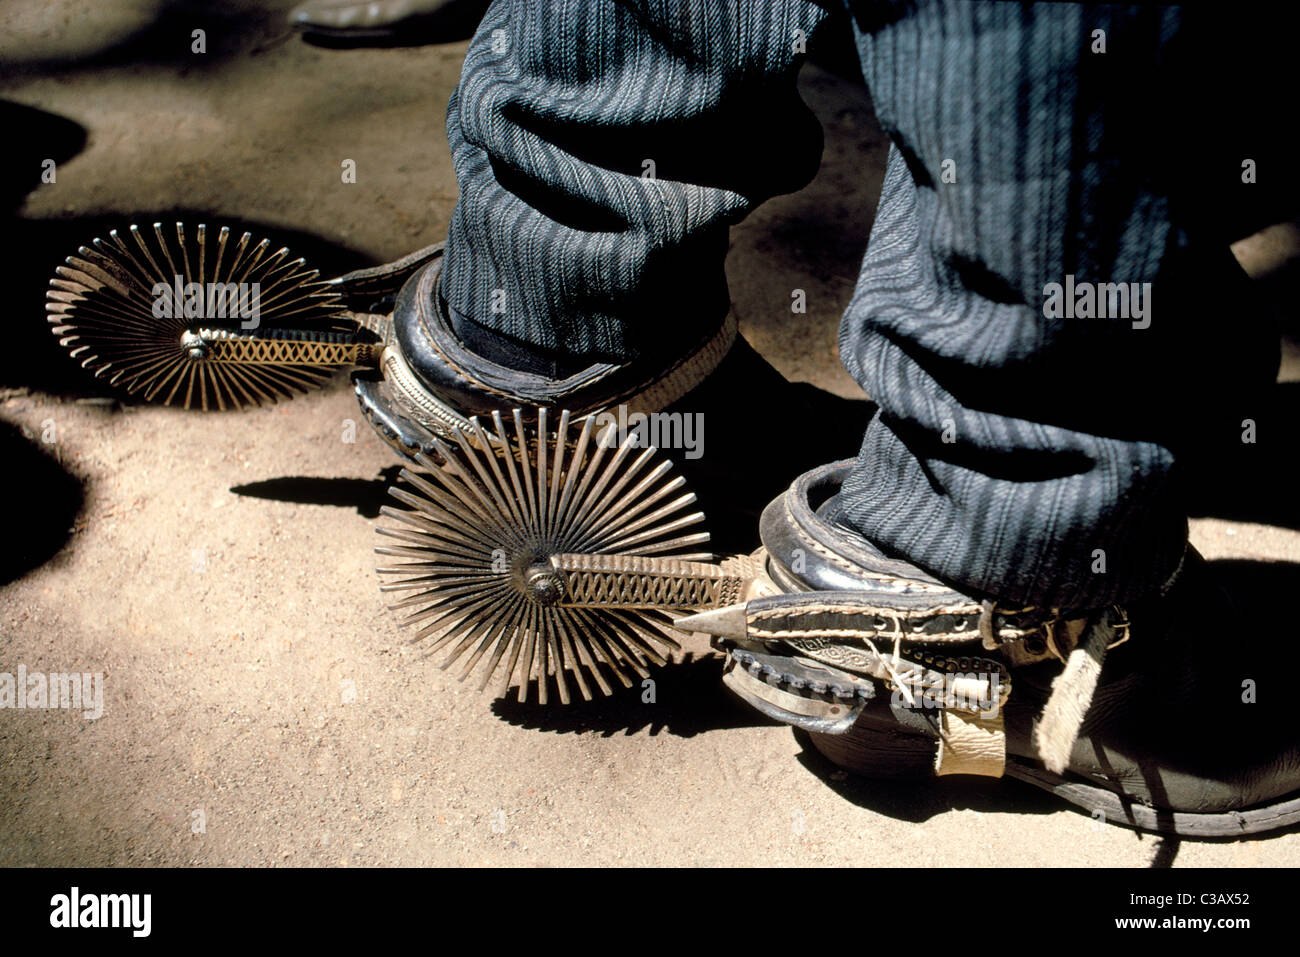 Ein paar schicke handgefertigte Silbersporen angeschnallt an den Stiefeln von einem argentinischen Gauchos (Cowboys) glitzern in der Sonne in Argentinien, Südamerika. Stockfoto